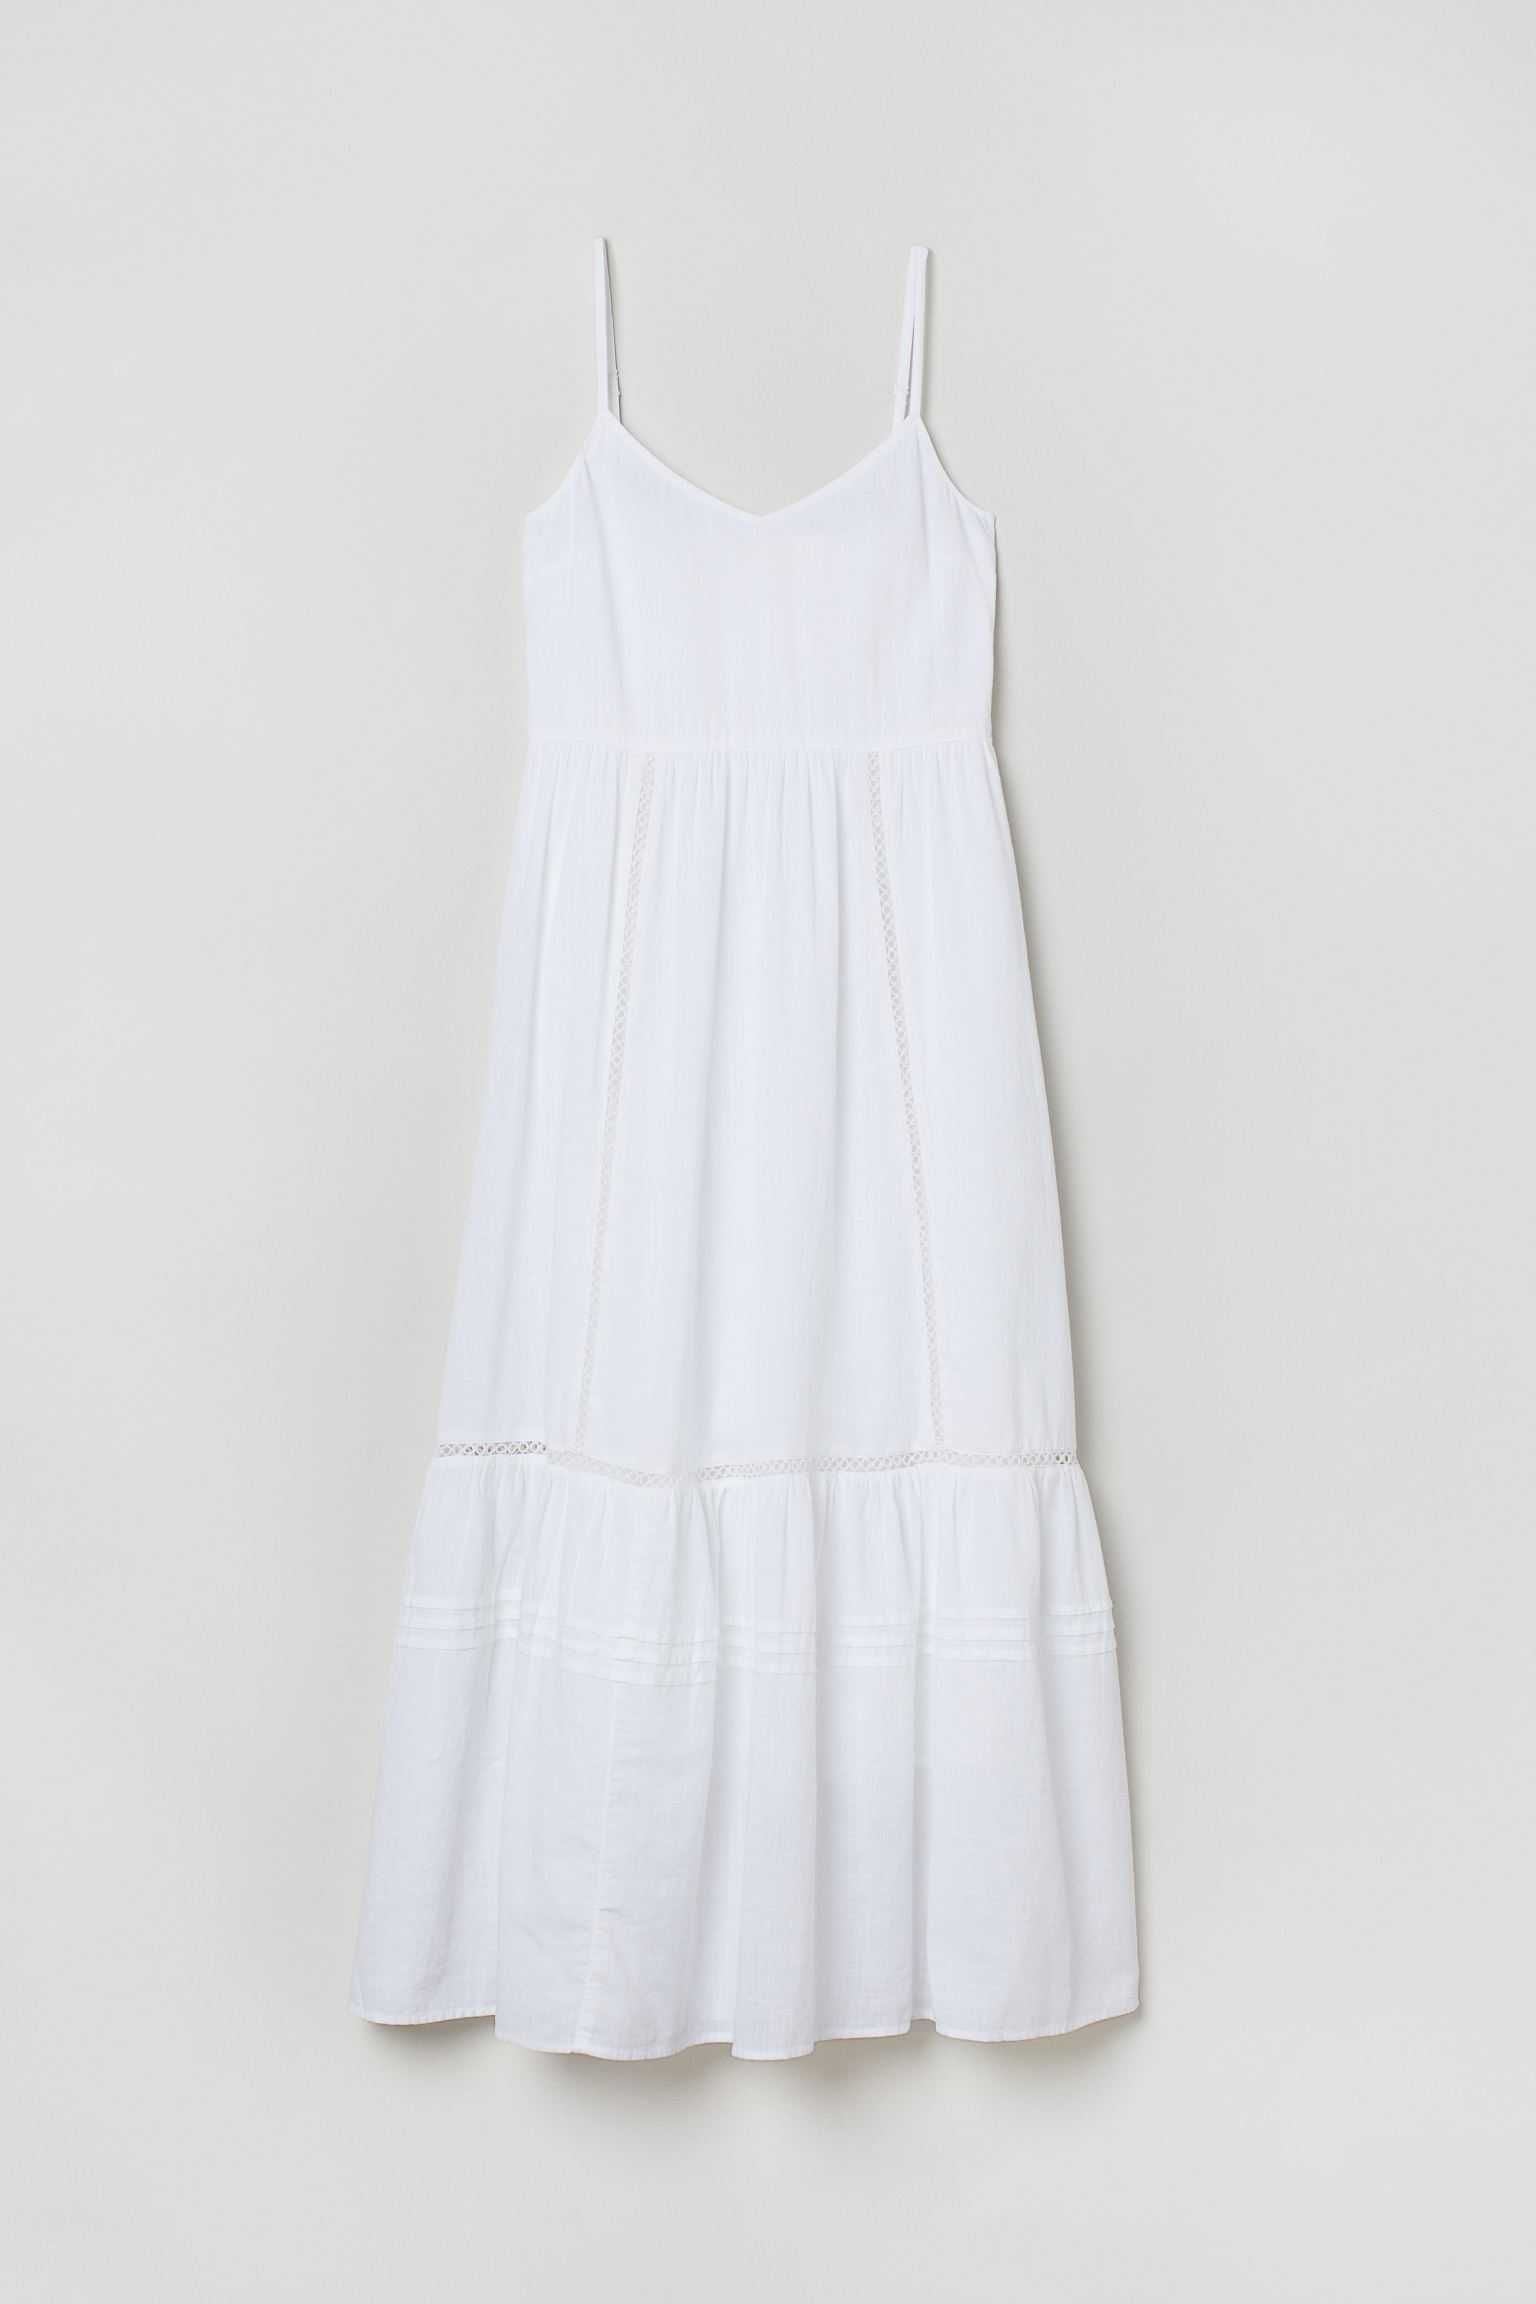 Nowa biała lekka bawełniana sukienka H&M 38 z podszewką boho Instagram